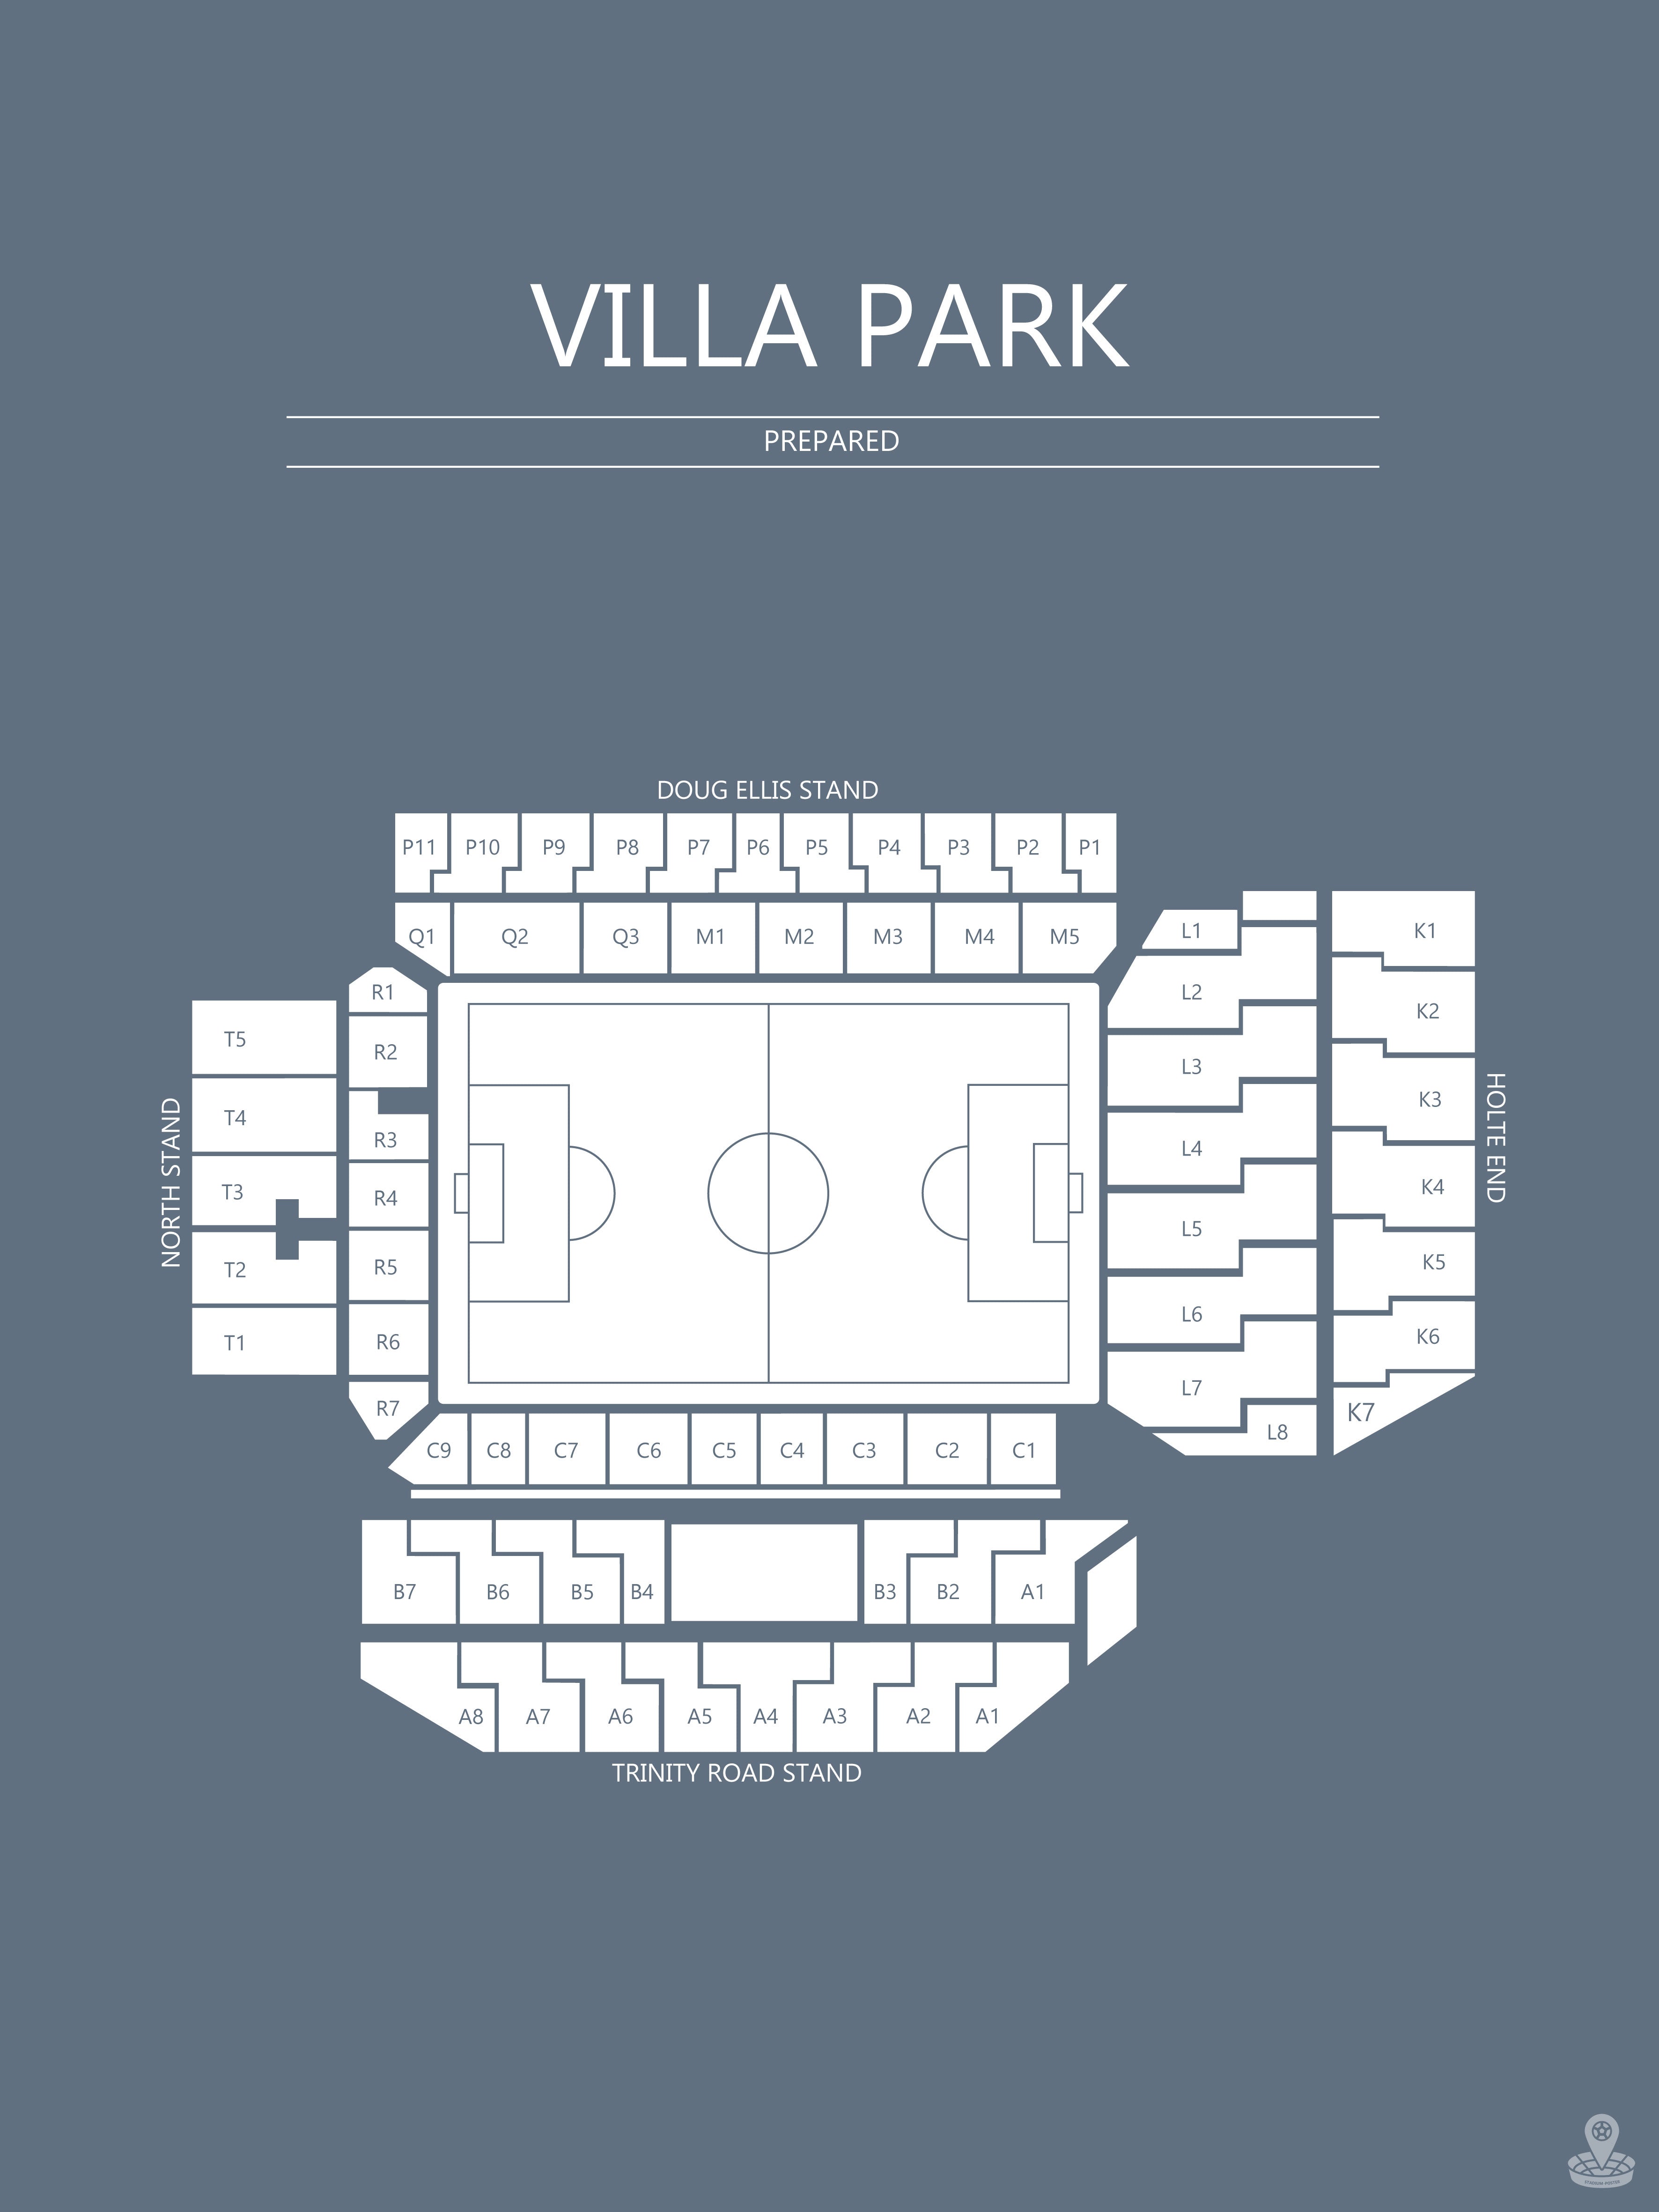 Fodbold plakat Aston Villa Villa Park Blågrå